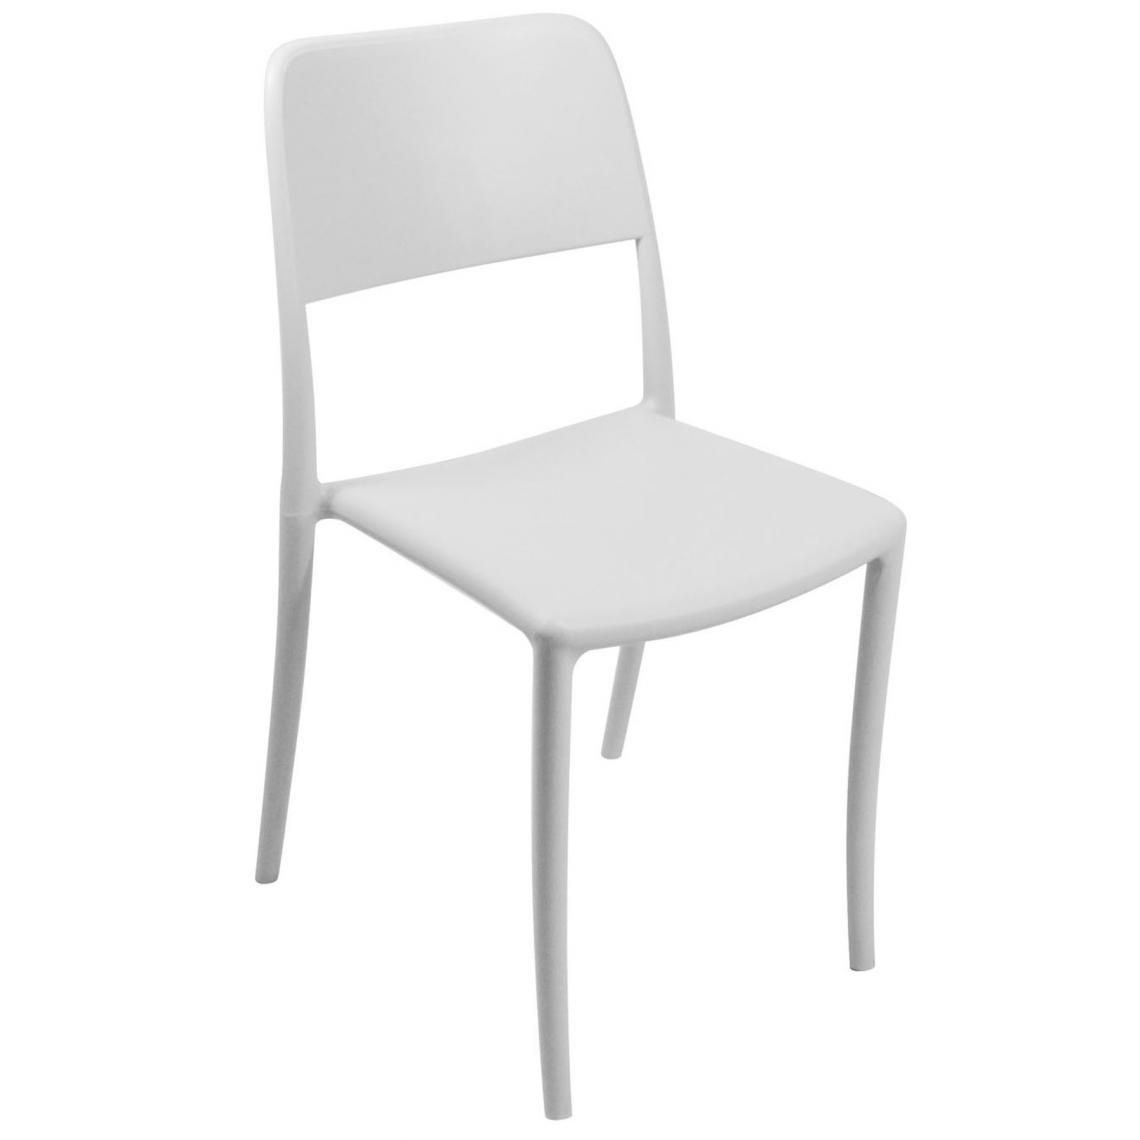 Pegane - Lot de 6 Chaises haute en polypropylène coloris blanc - Dim : 44 x 53 x 63 cm -PEGANE- - Chaises de jardin